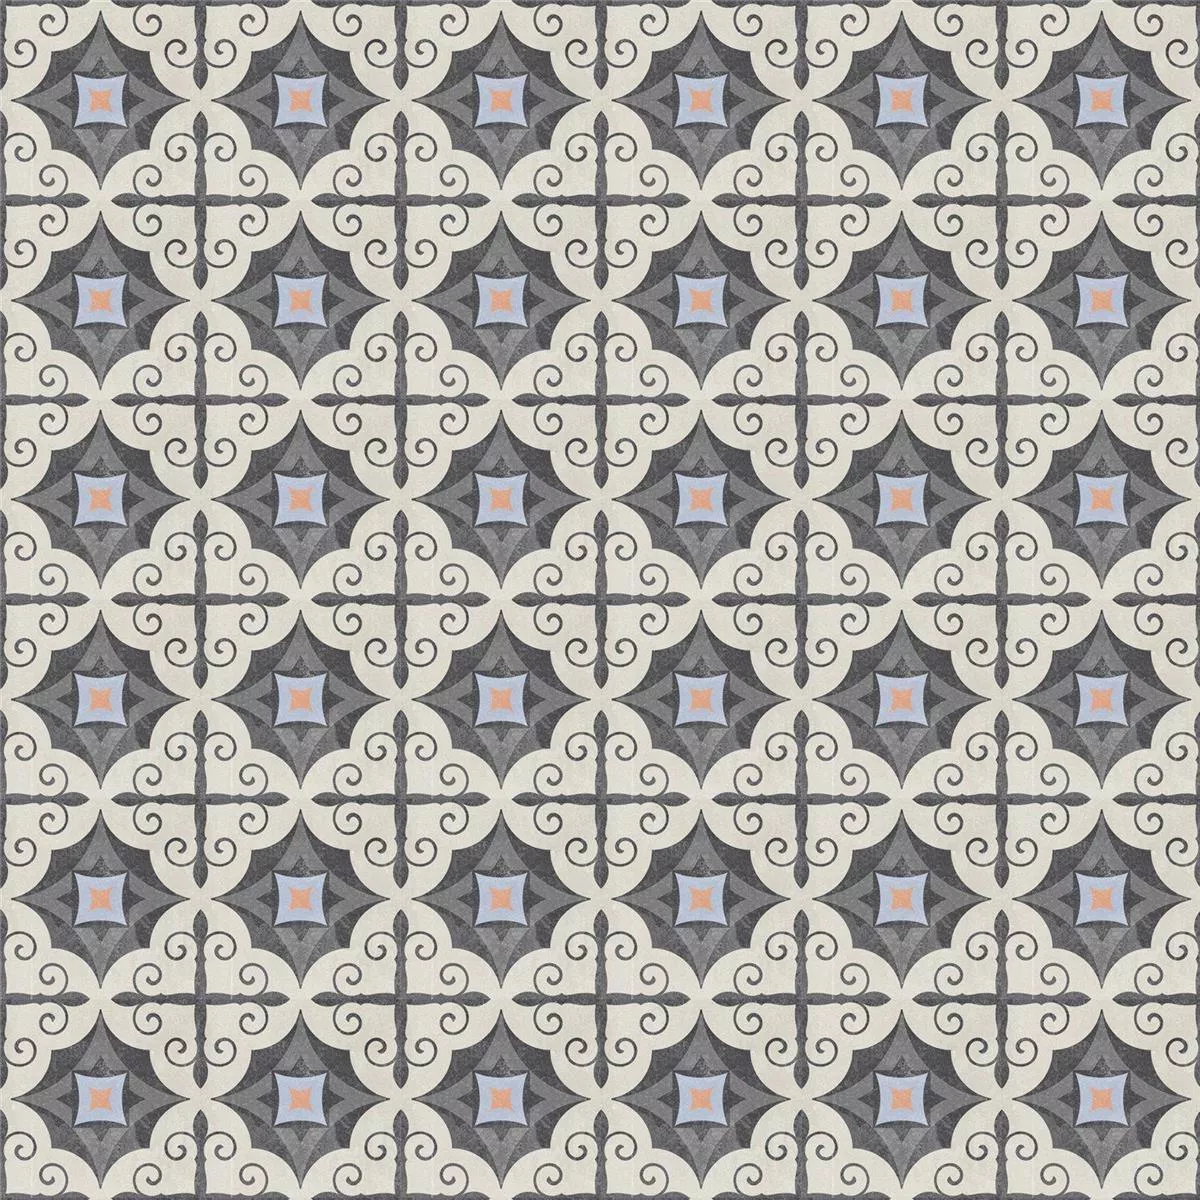 Πλακάκι Δαπέδου Εμφάνιση Tσιμέντου Toulon Serrano 18,6x18,6cm